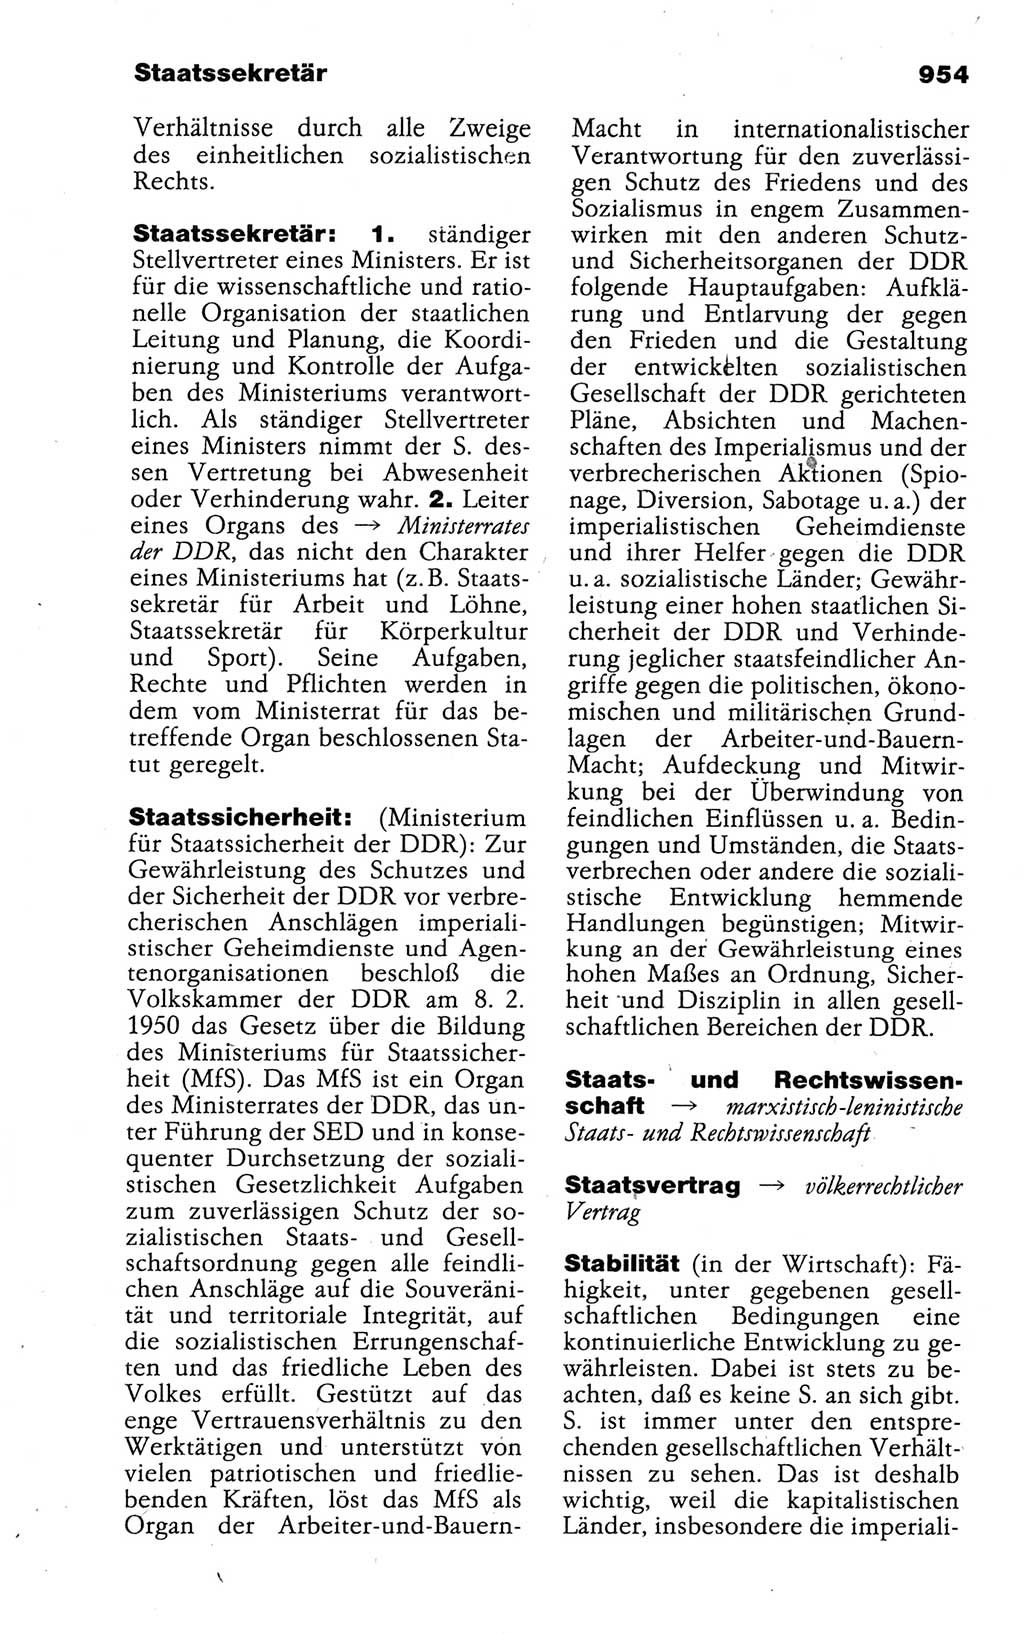 Kleines politisches Wörterbuch [Deutsche Demokratische Republik (DDR)] 1988, Seite 954 (Kl. pol. Wb. DDR 1988, S. 954)